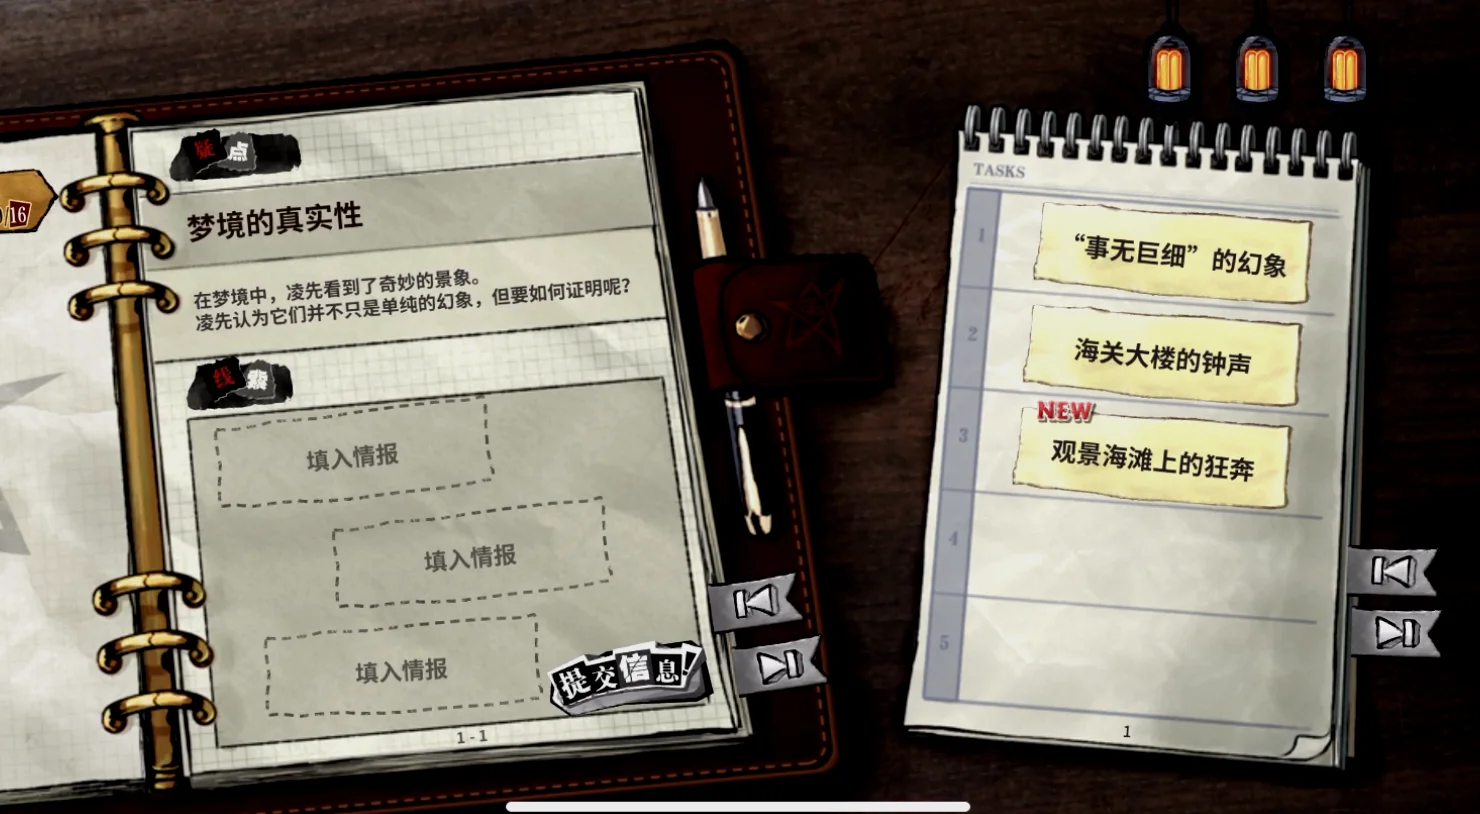 在克系游戏里，调查员的调查笔记是个非常常见的设定，比如《寄居隅怪奇事件簿》